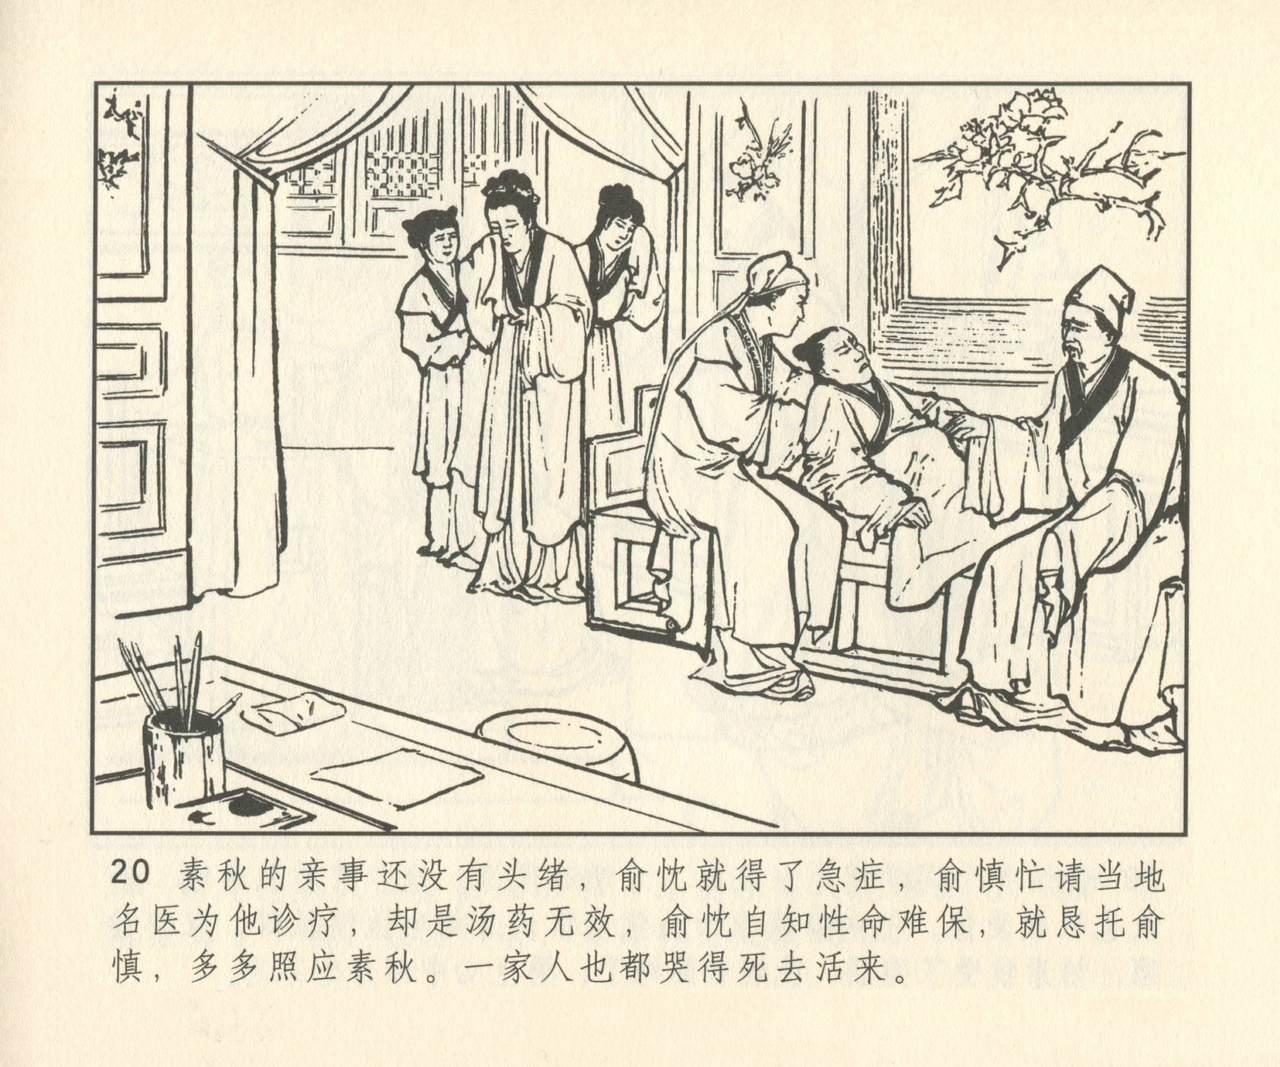 聊斋志异 张玮等绘 天津人民美术出版社 卷二十一 ~ 三十 300